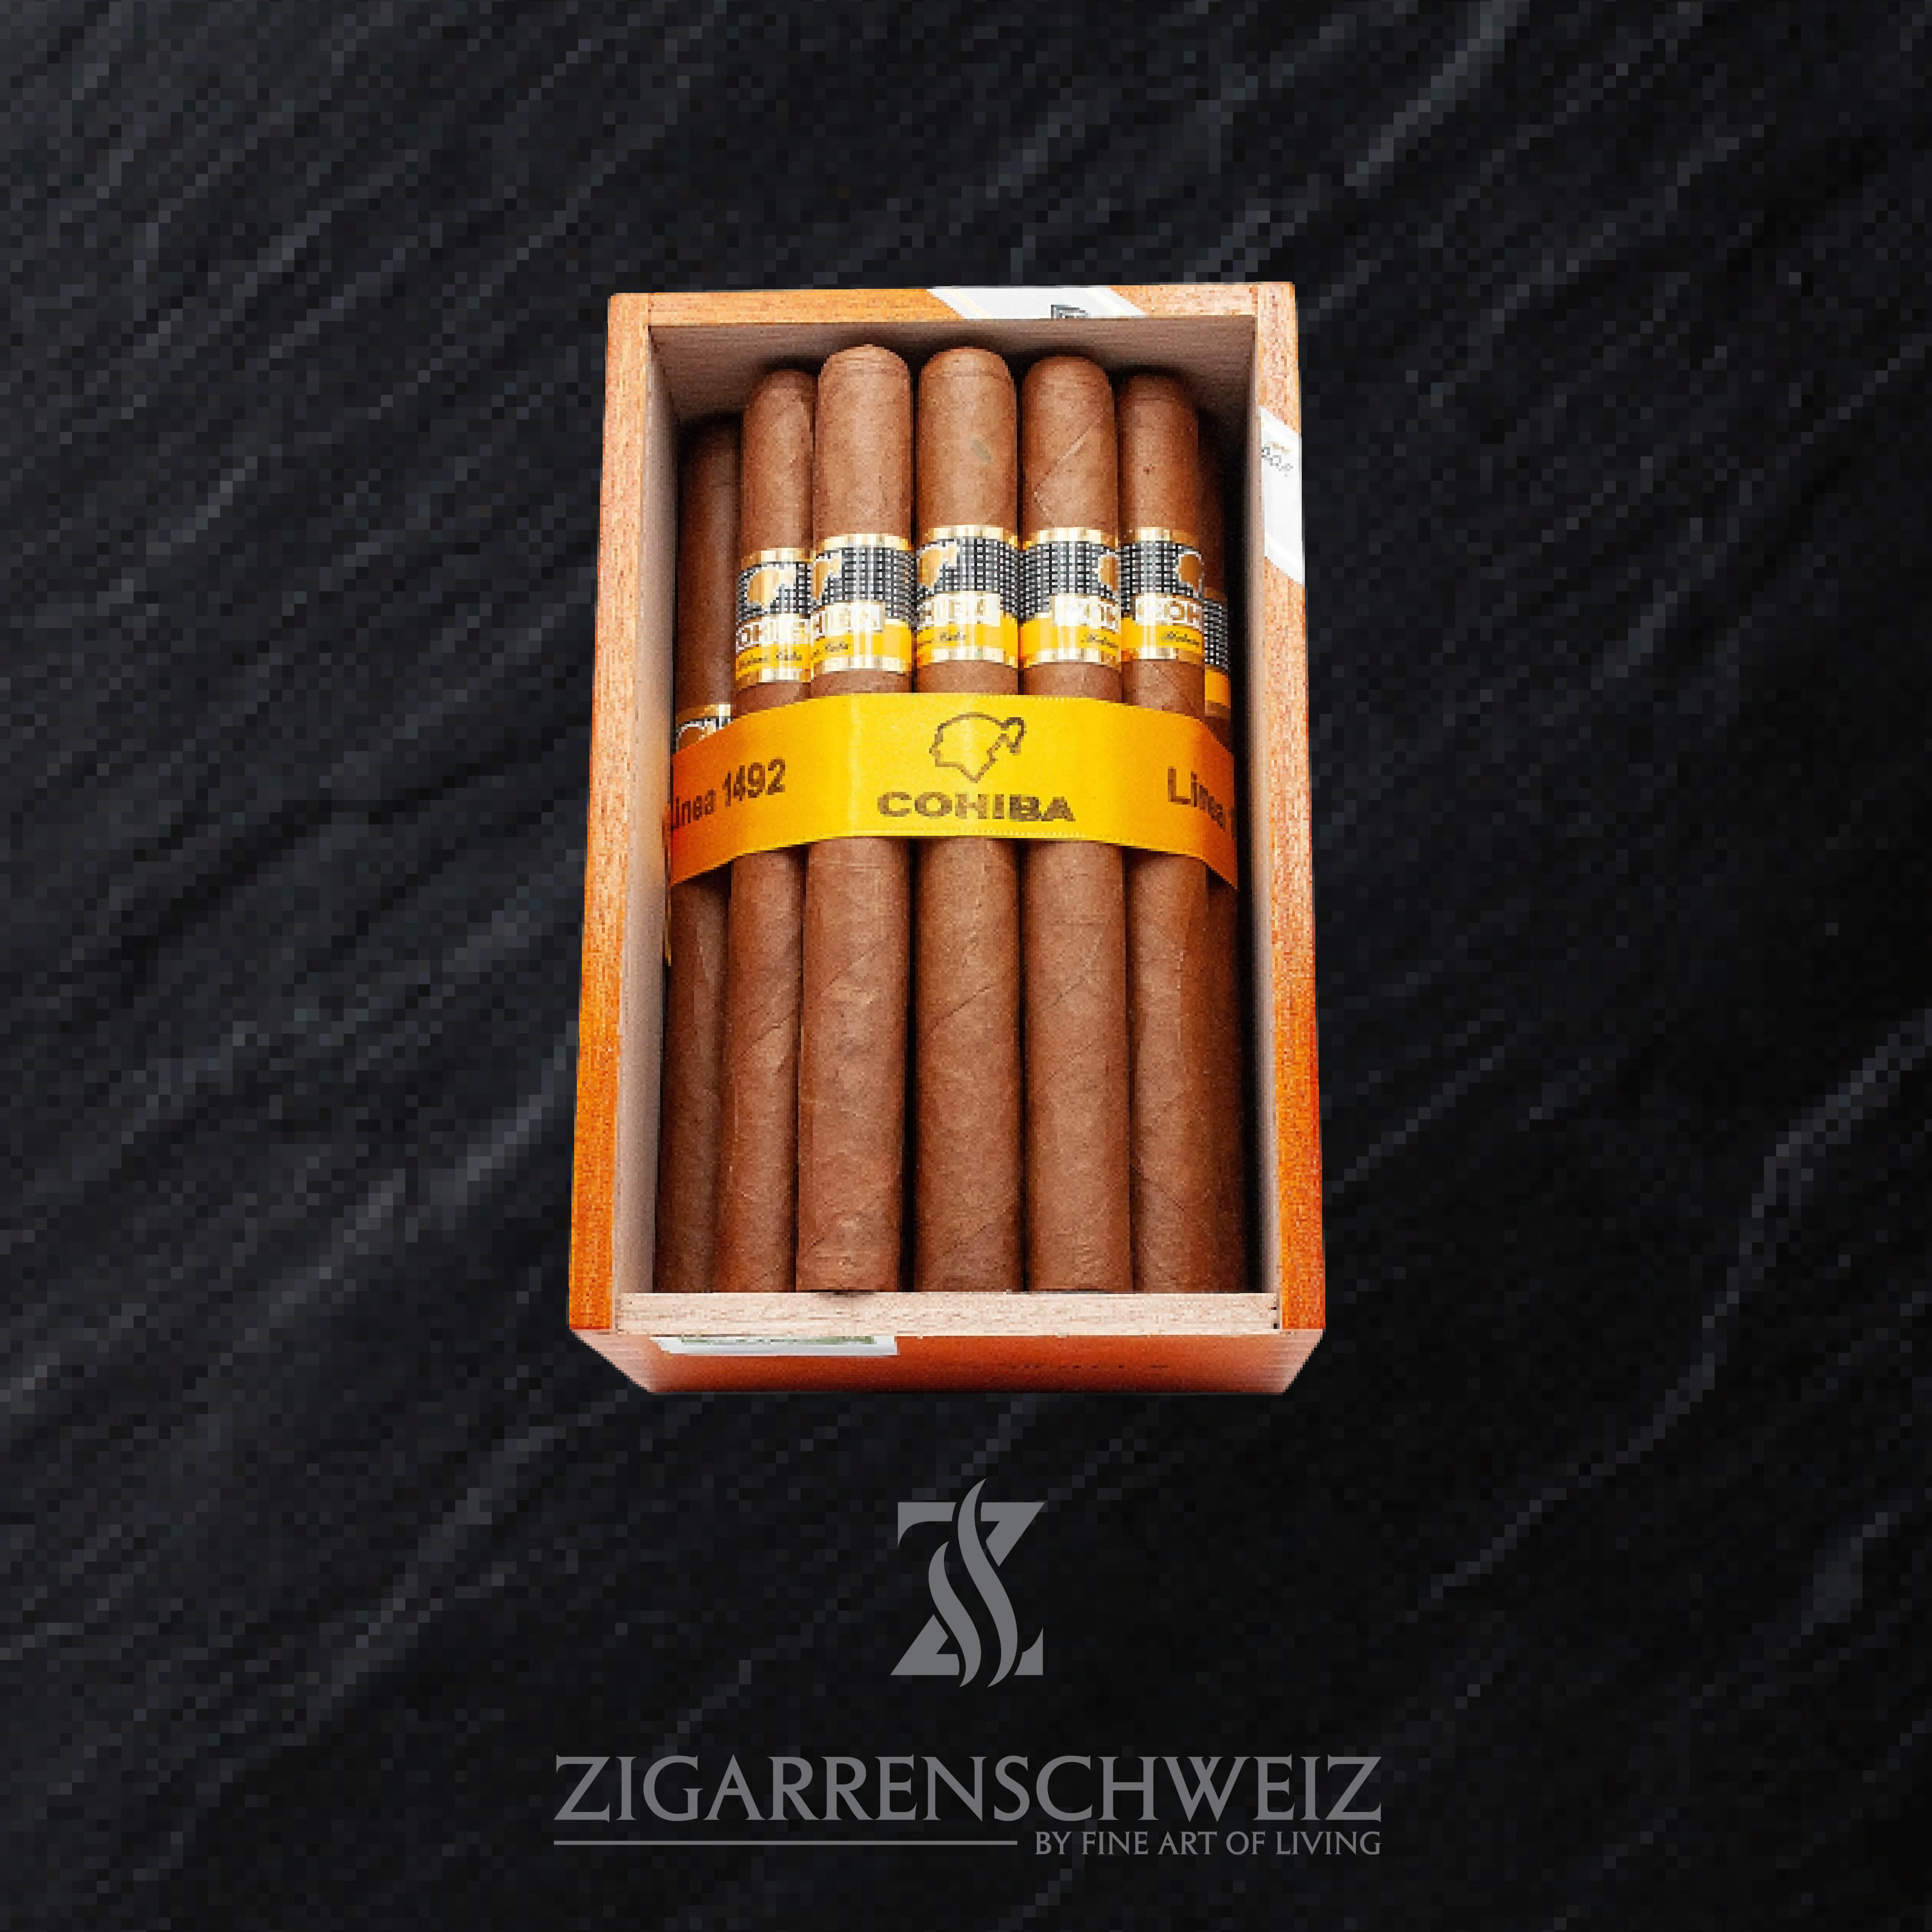 Cohiba Siglo V (5) Zigarre der Cohiba Linea 1492 - 25er Kiste offen